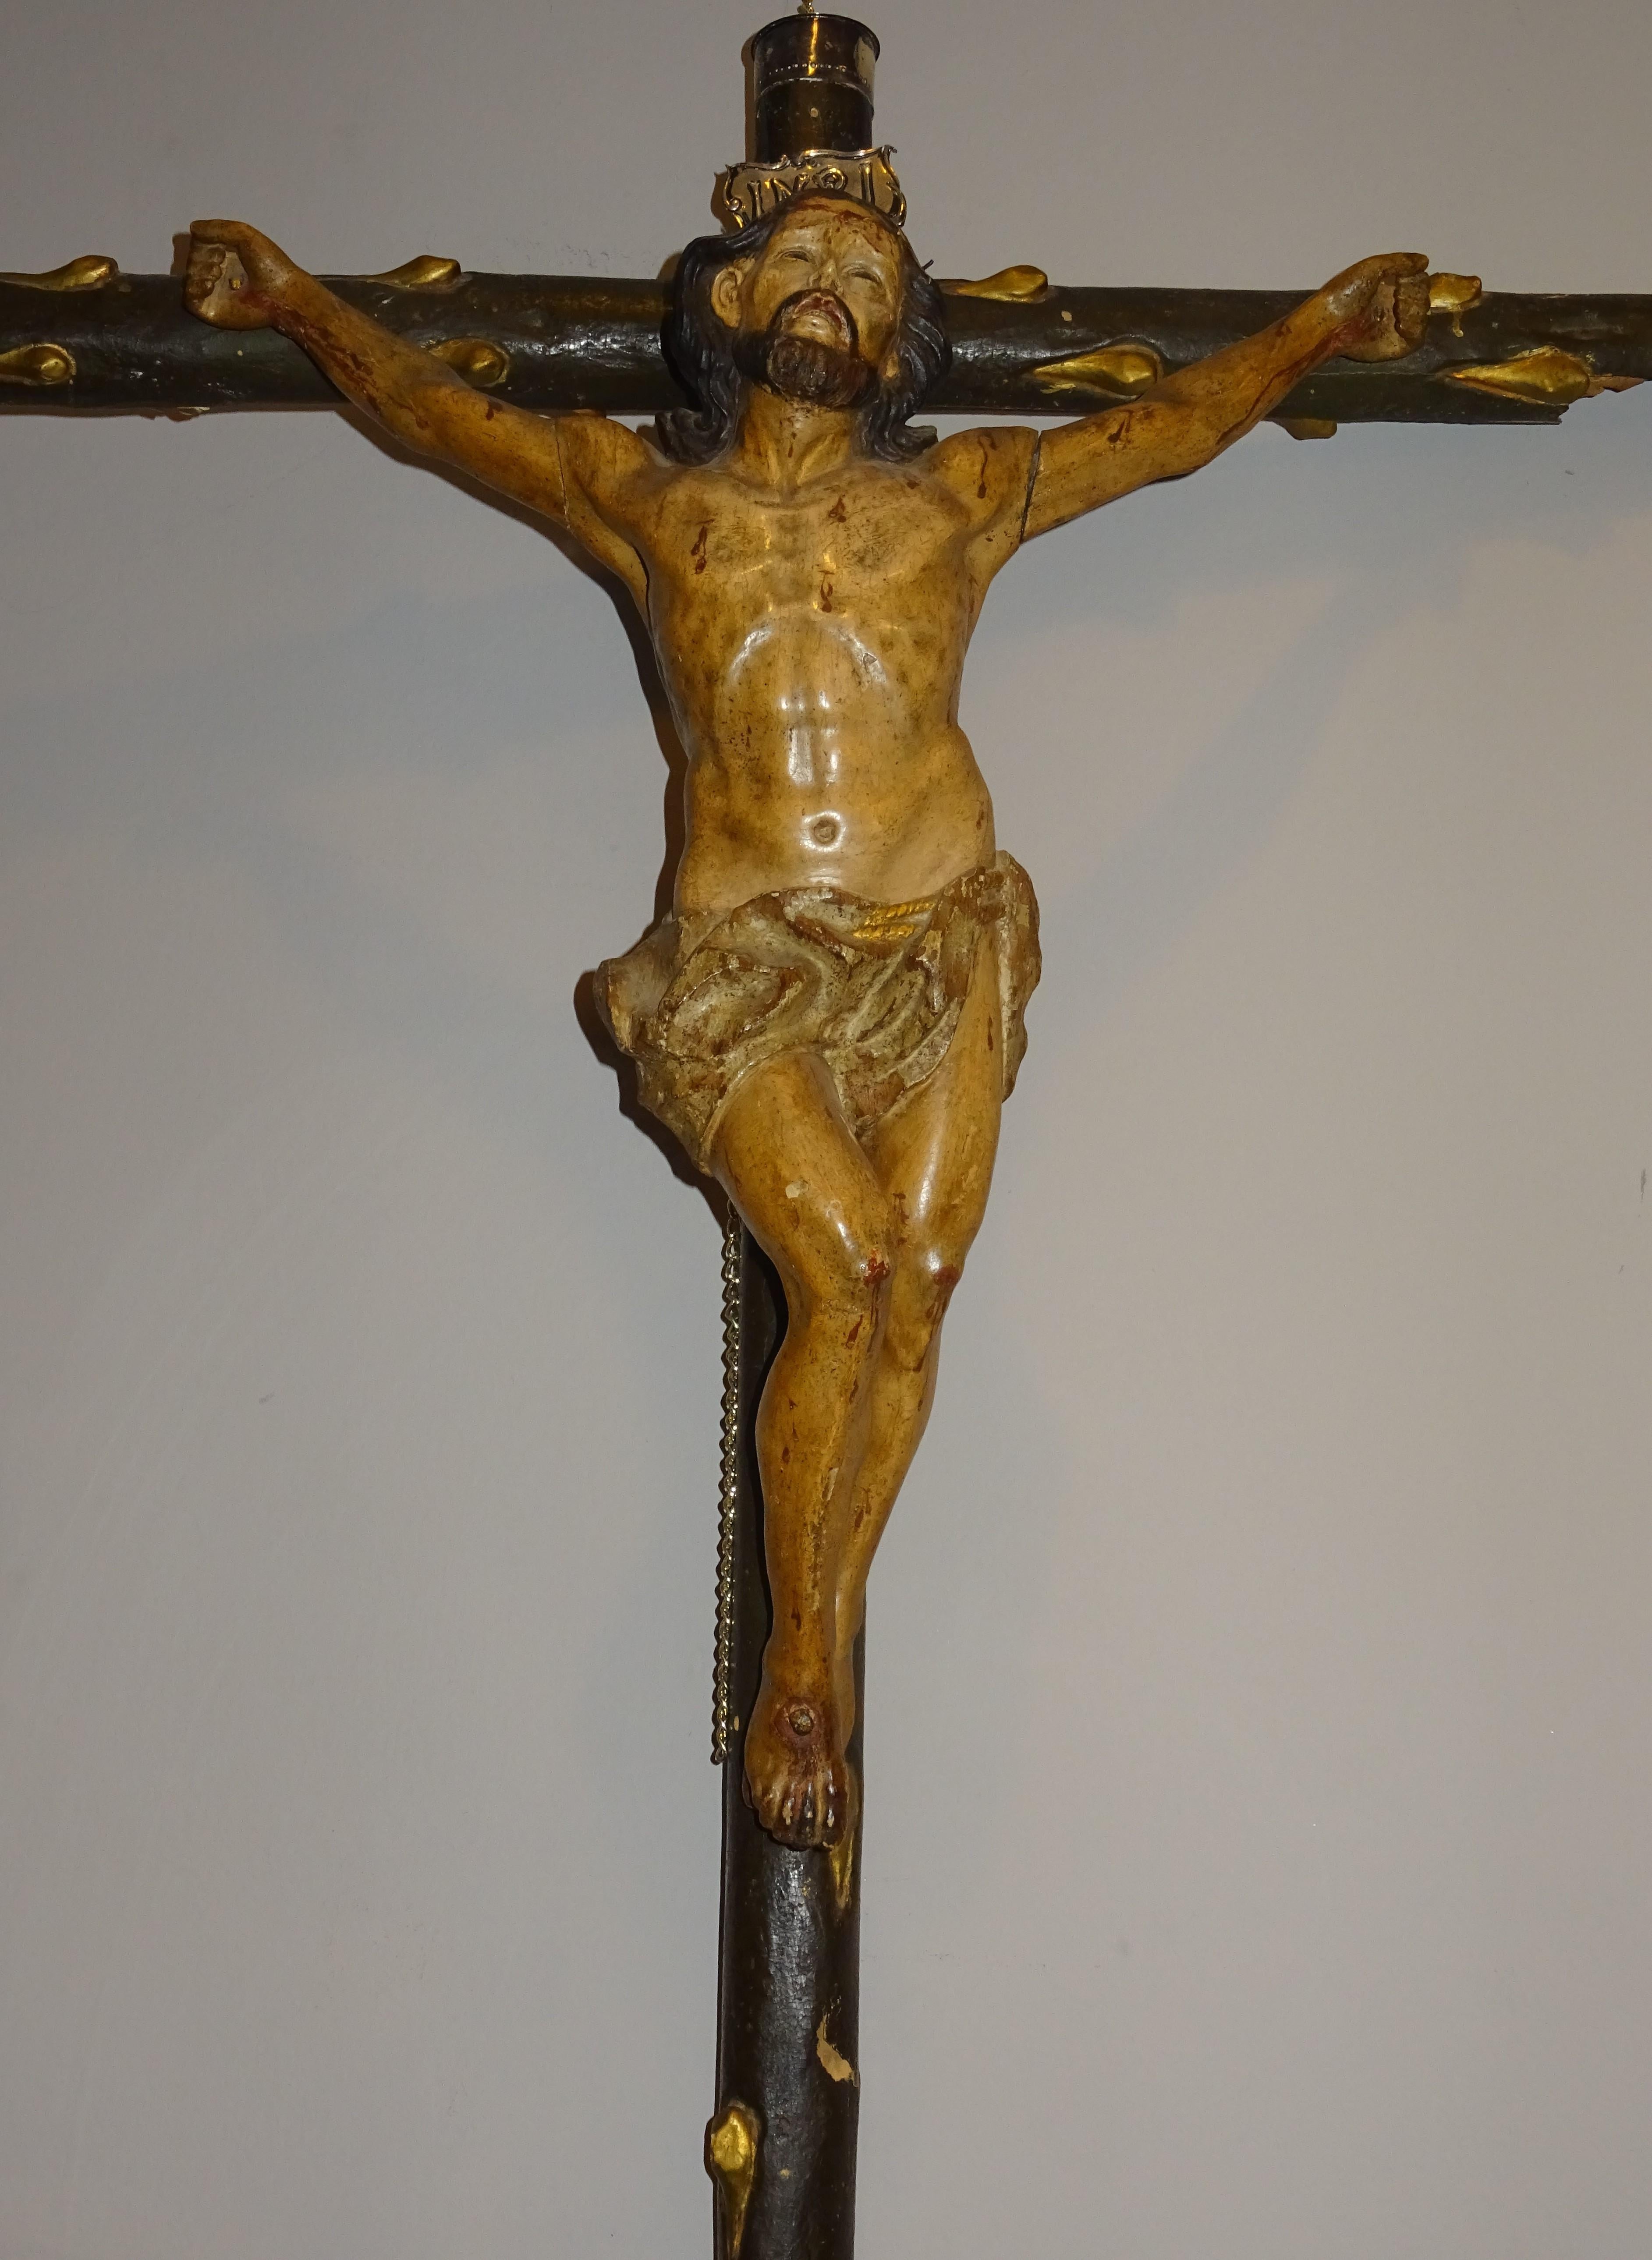 Sculpture unique du Christ crucifié en bois sculpté et yeux de cristal (l'un d'entre eux est détaché), école hispano philippine du 18e siècle. La couronne, l'inscription et les finitions sont en argent.
Une étonnante sculpture du Christ crucifié